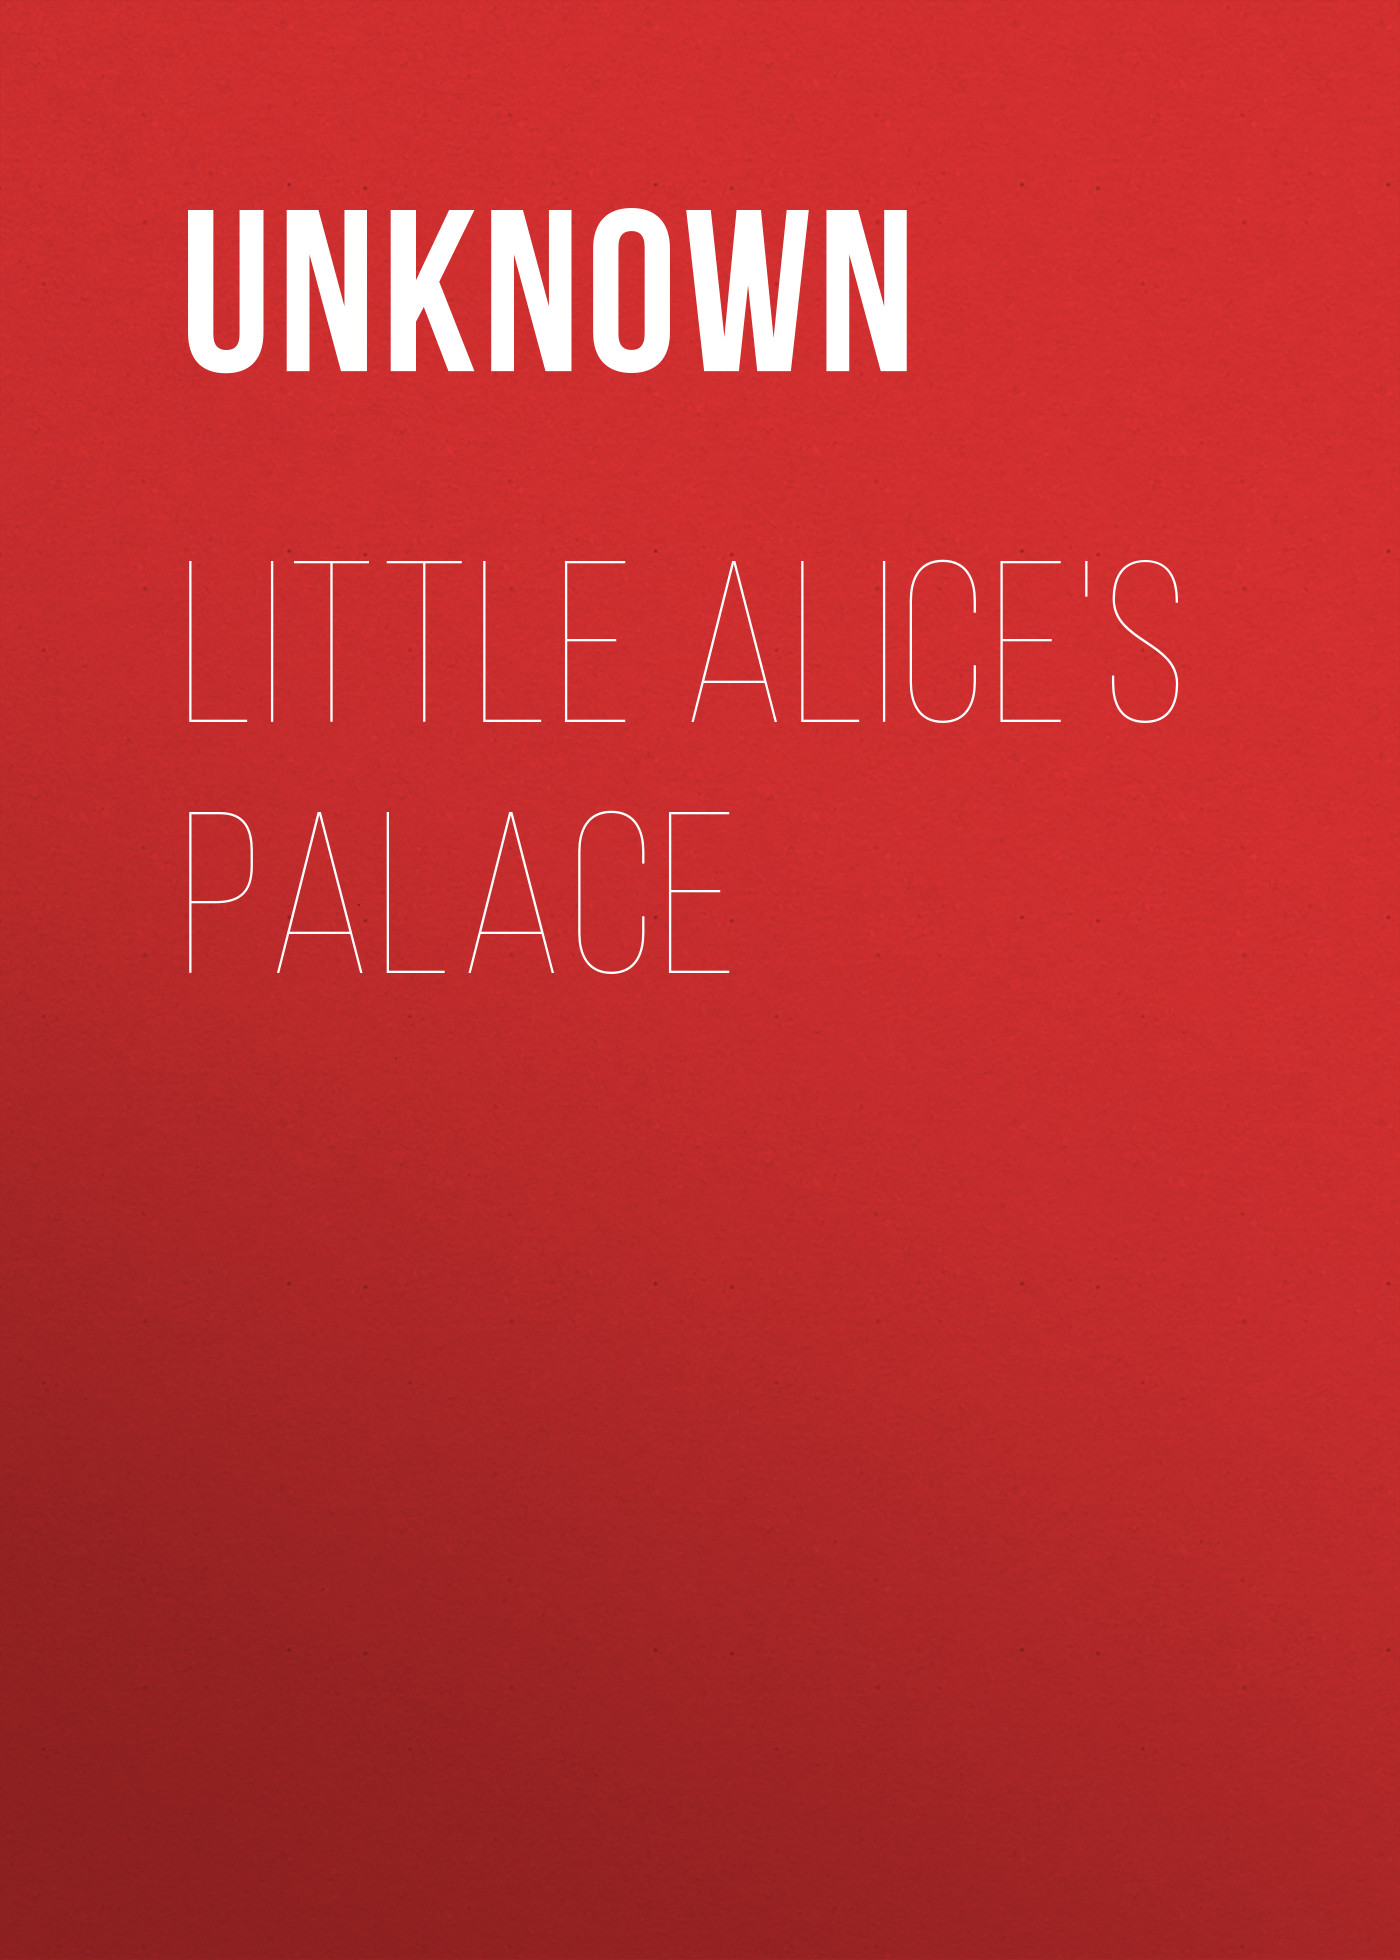 Книга Little Alice's Palace из серии , созданная Unknown Unknown, может относится к жанру Зарубежные детские книги, Зарубежная старинная литература, Зарубежная классика. Стоимость электронной книги Little Alice's Palace с идентификатором 35496551 составляет 0 руб.